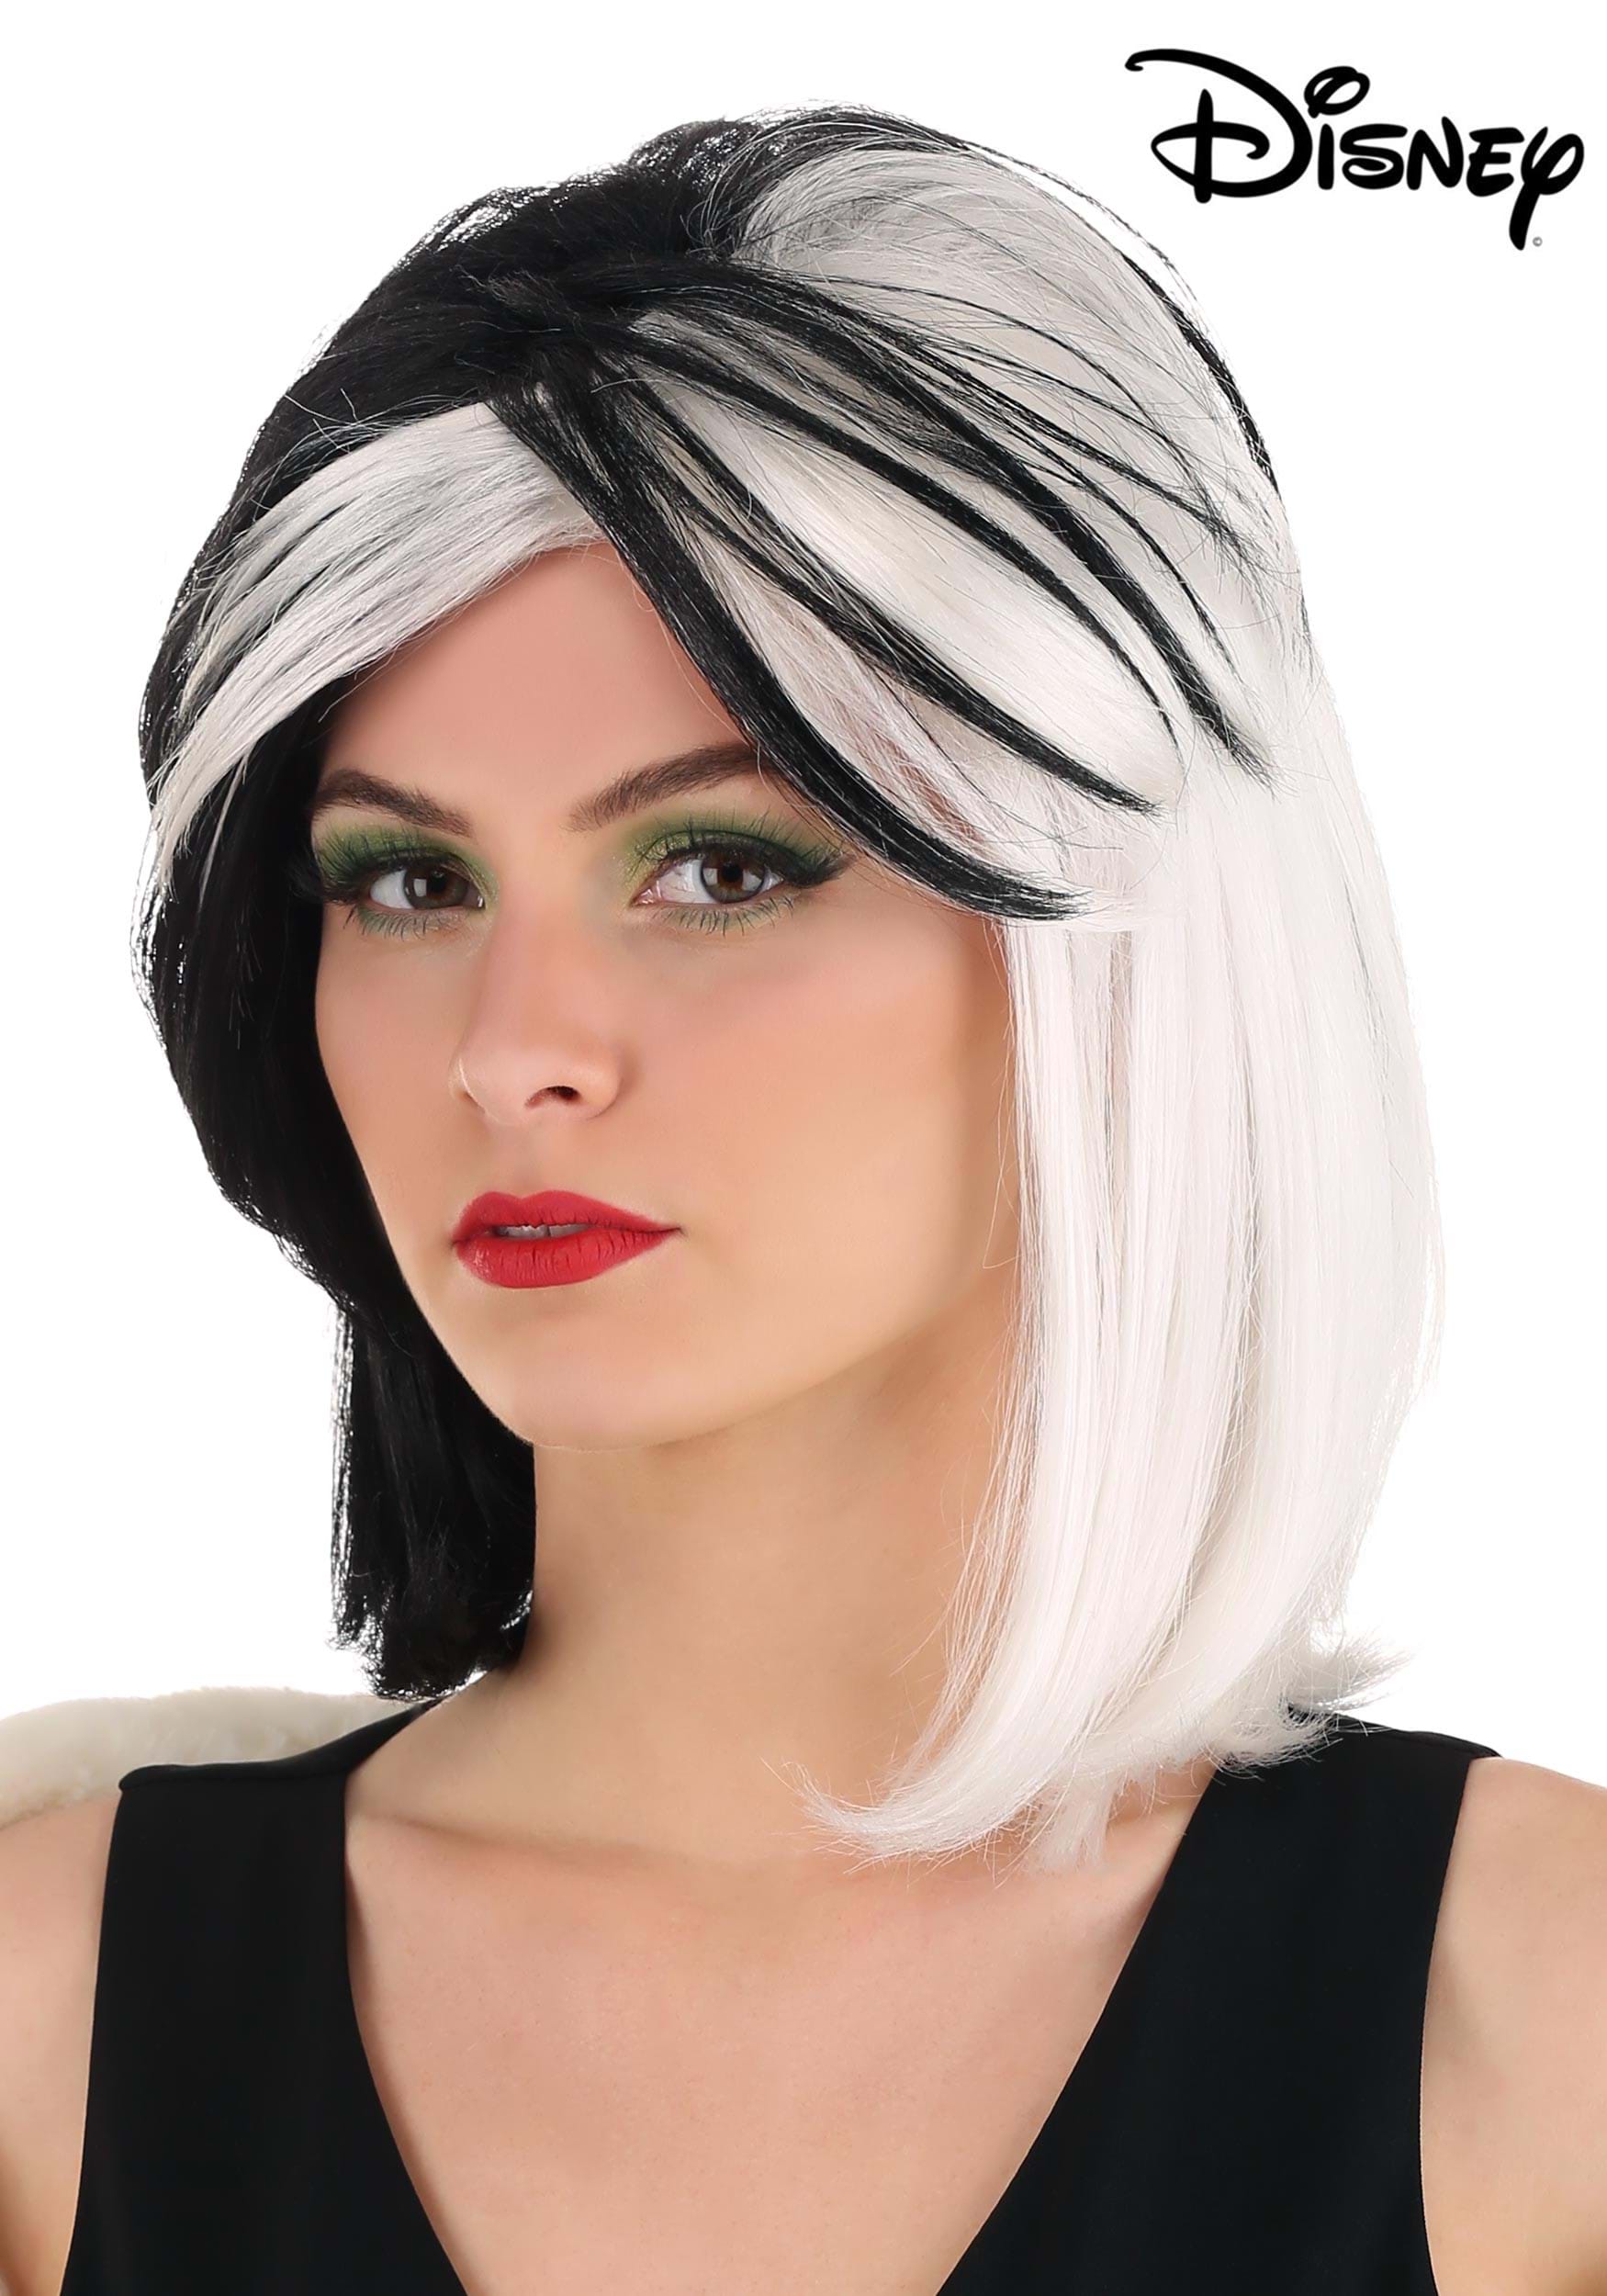 101 Dalmatians Fashion Cruella De Vil Women’s Wig